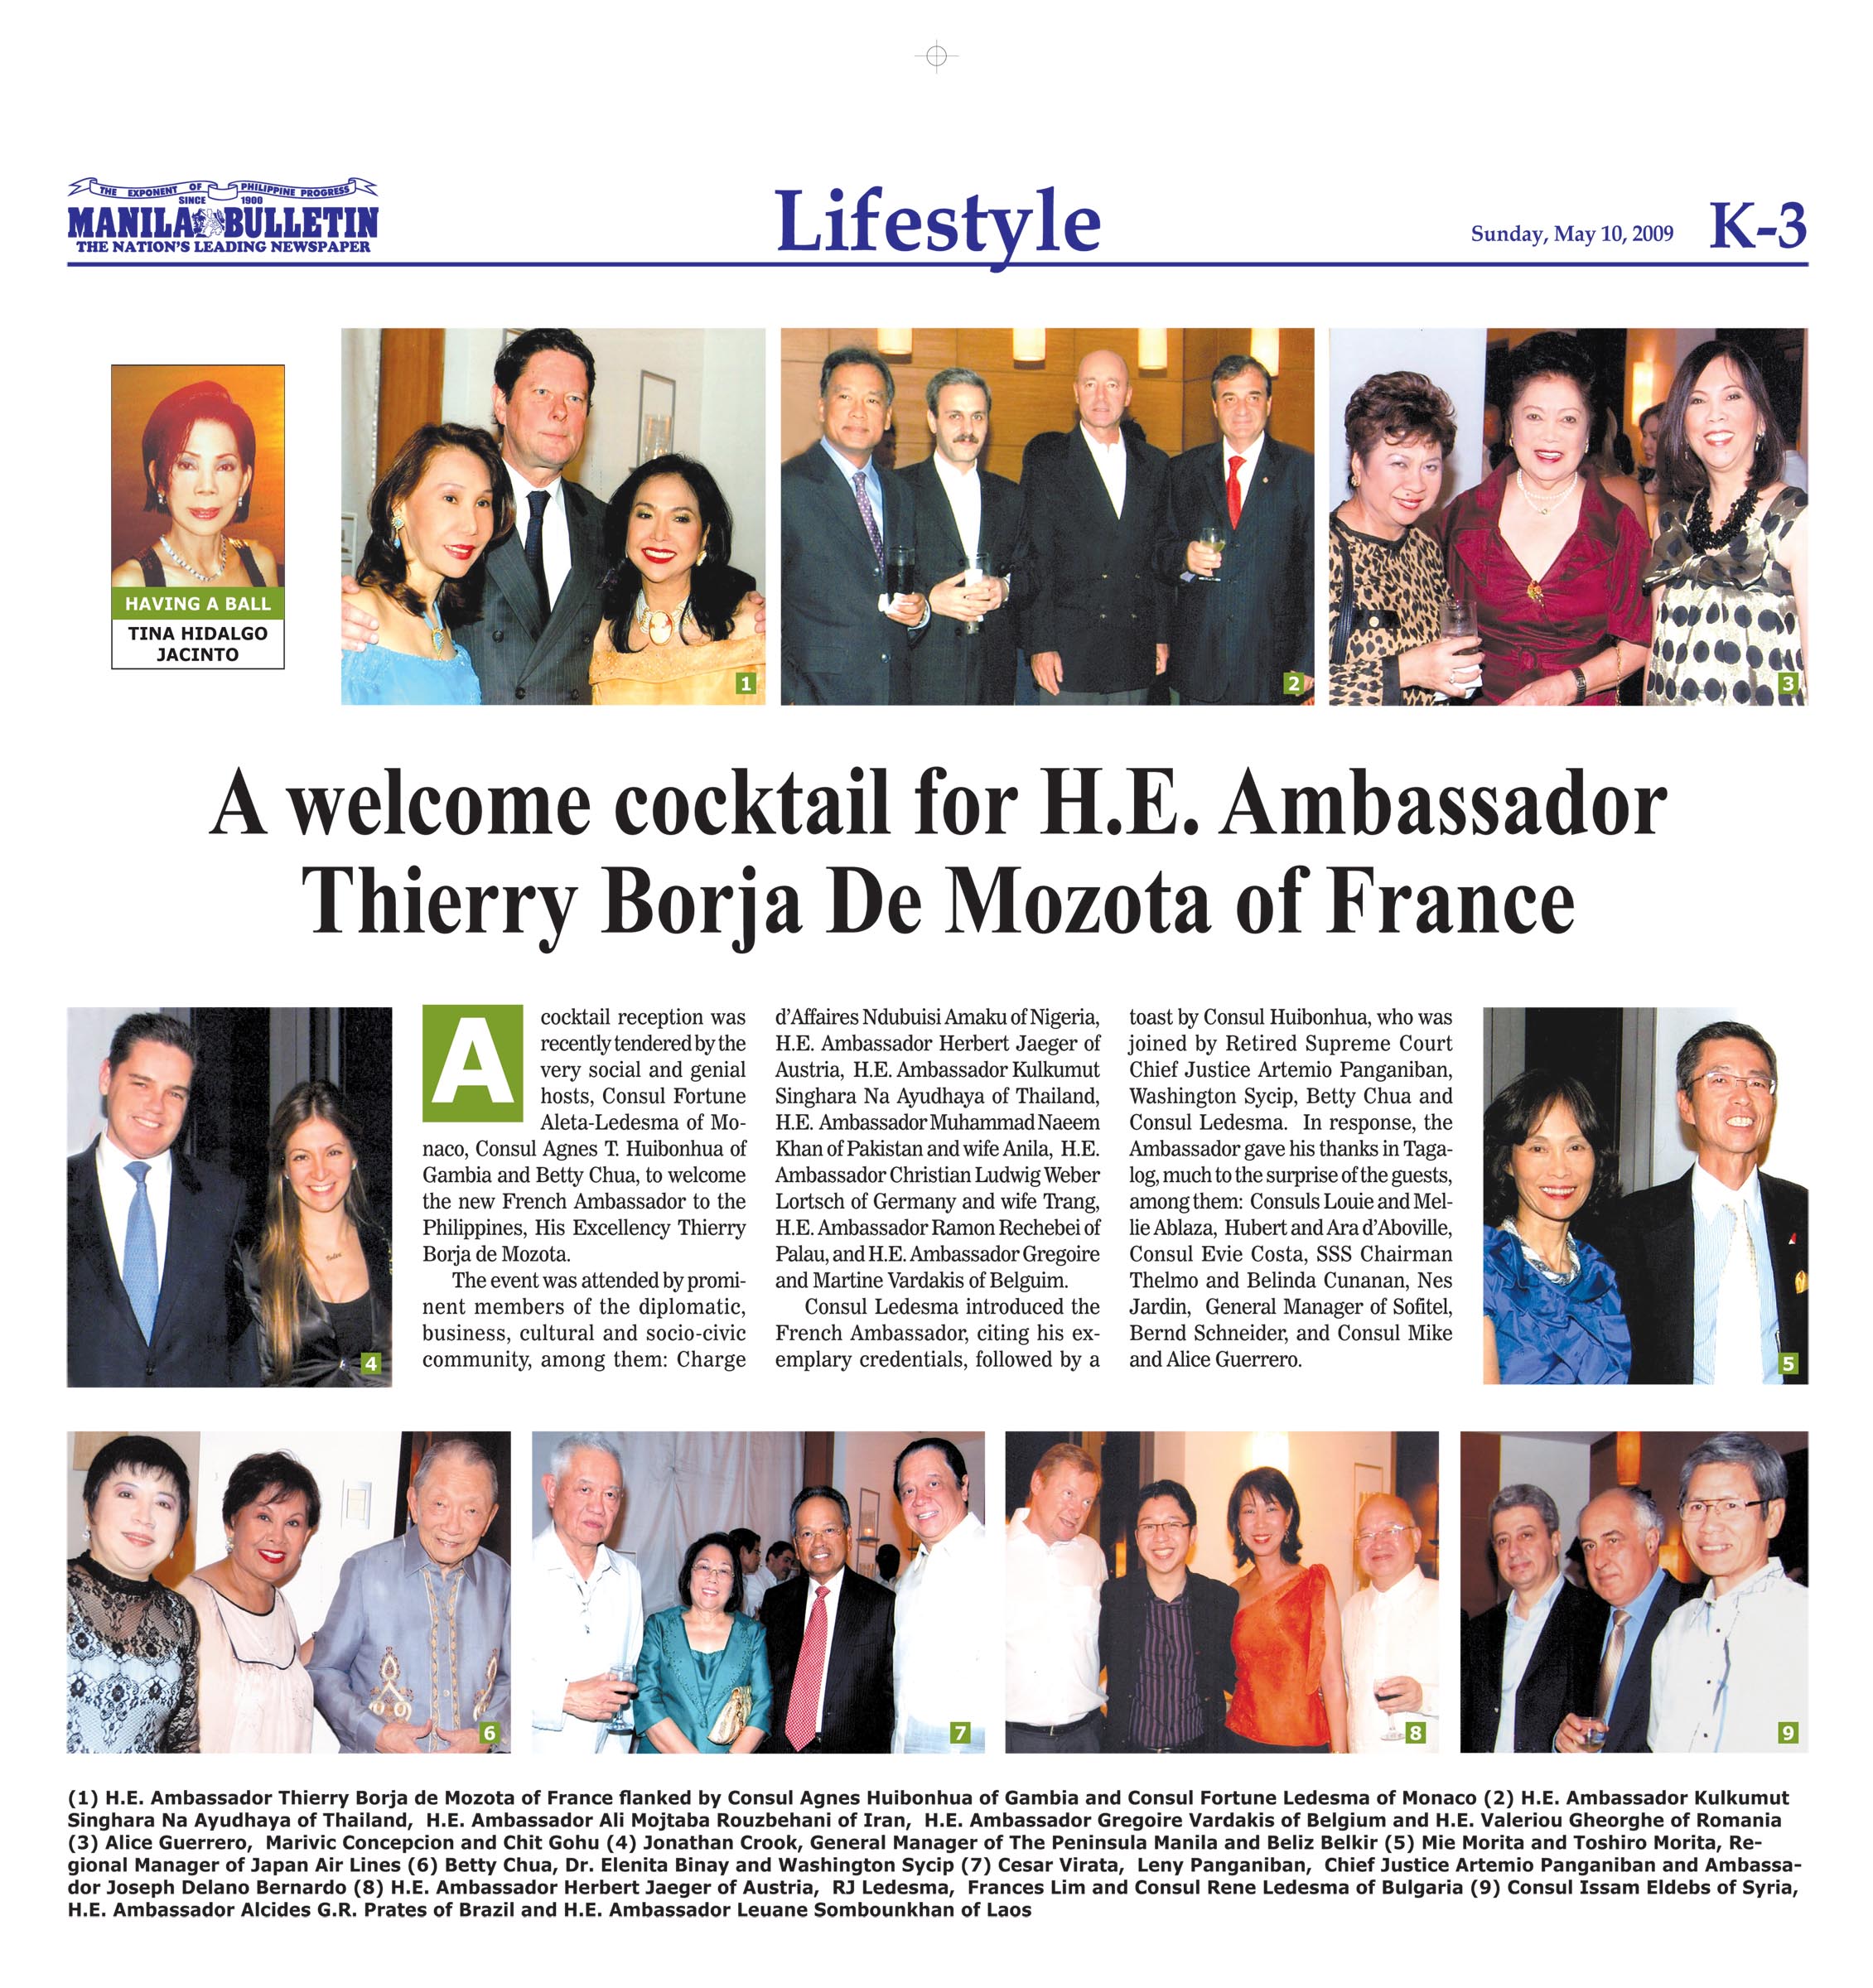 A welcome cocktail for H.E. Ambassador Thierry Borja De Mozota of France